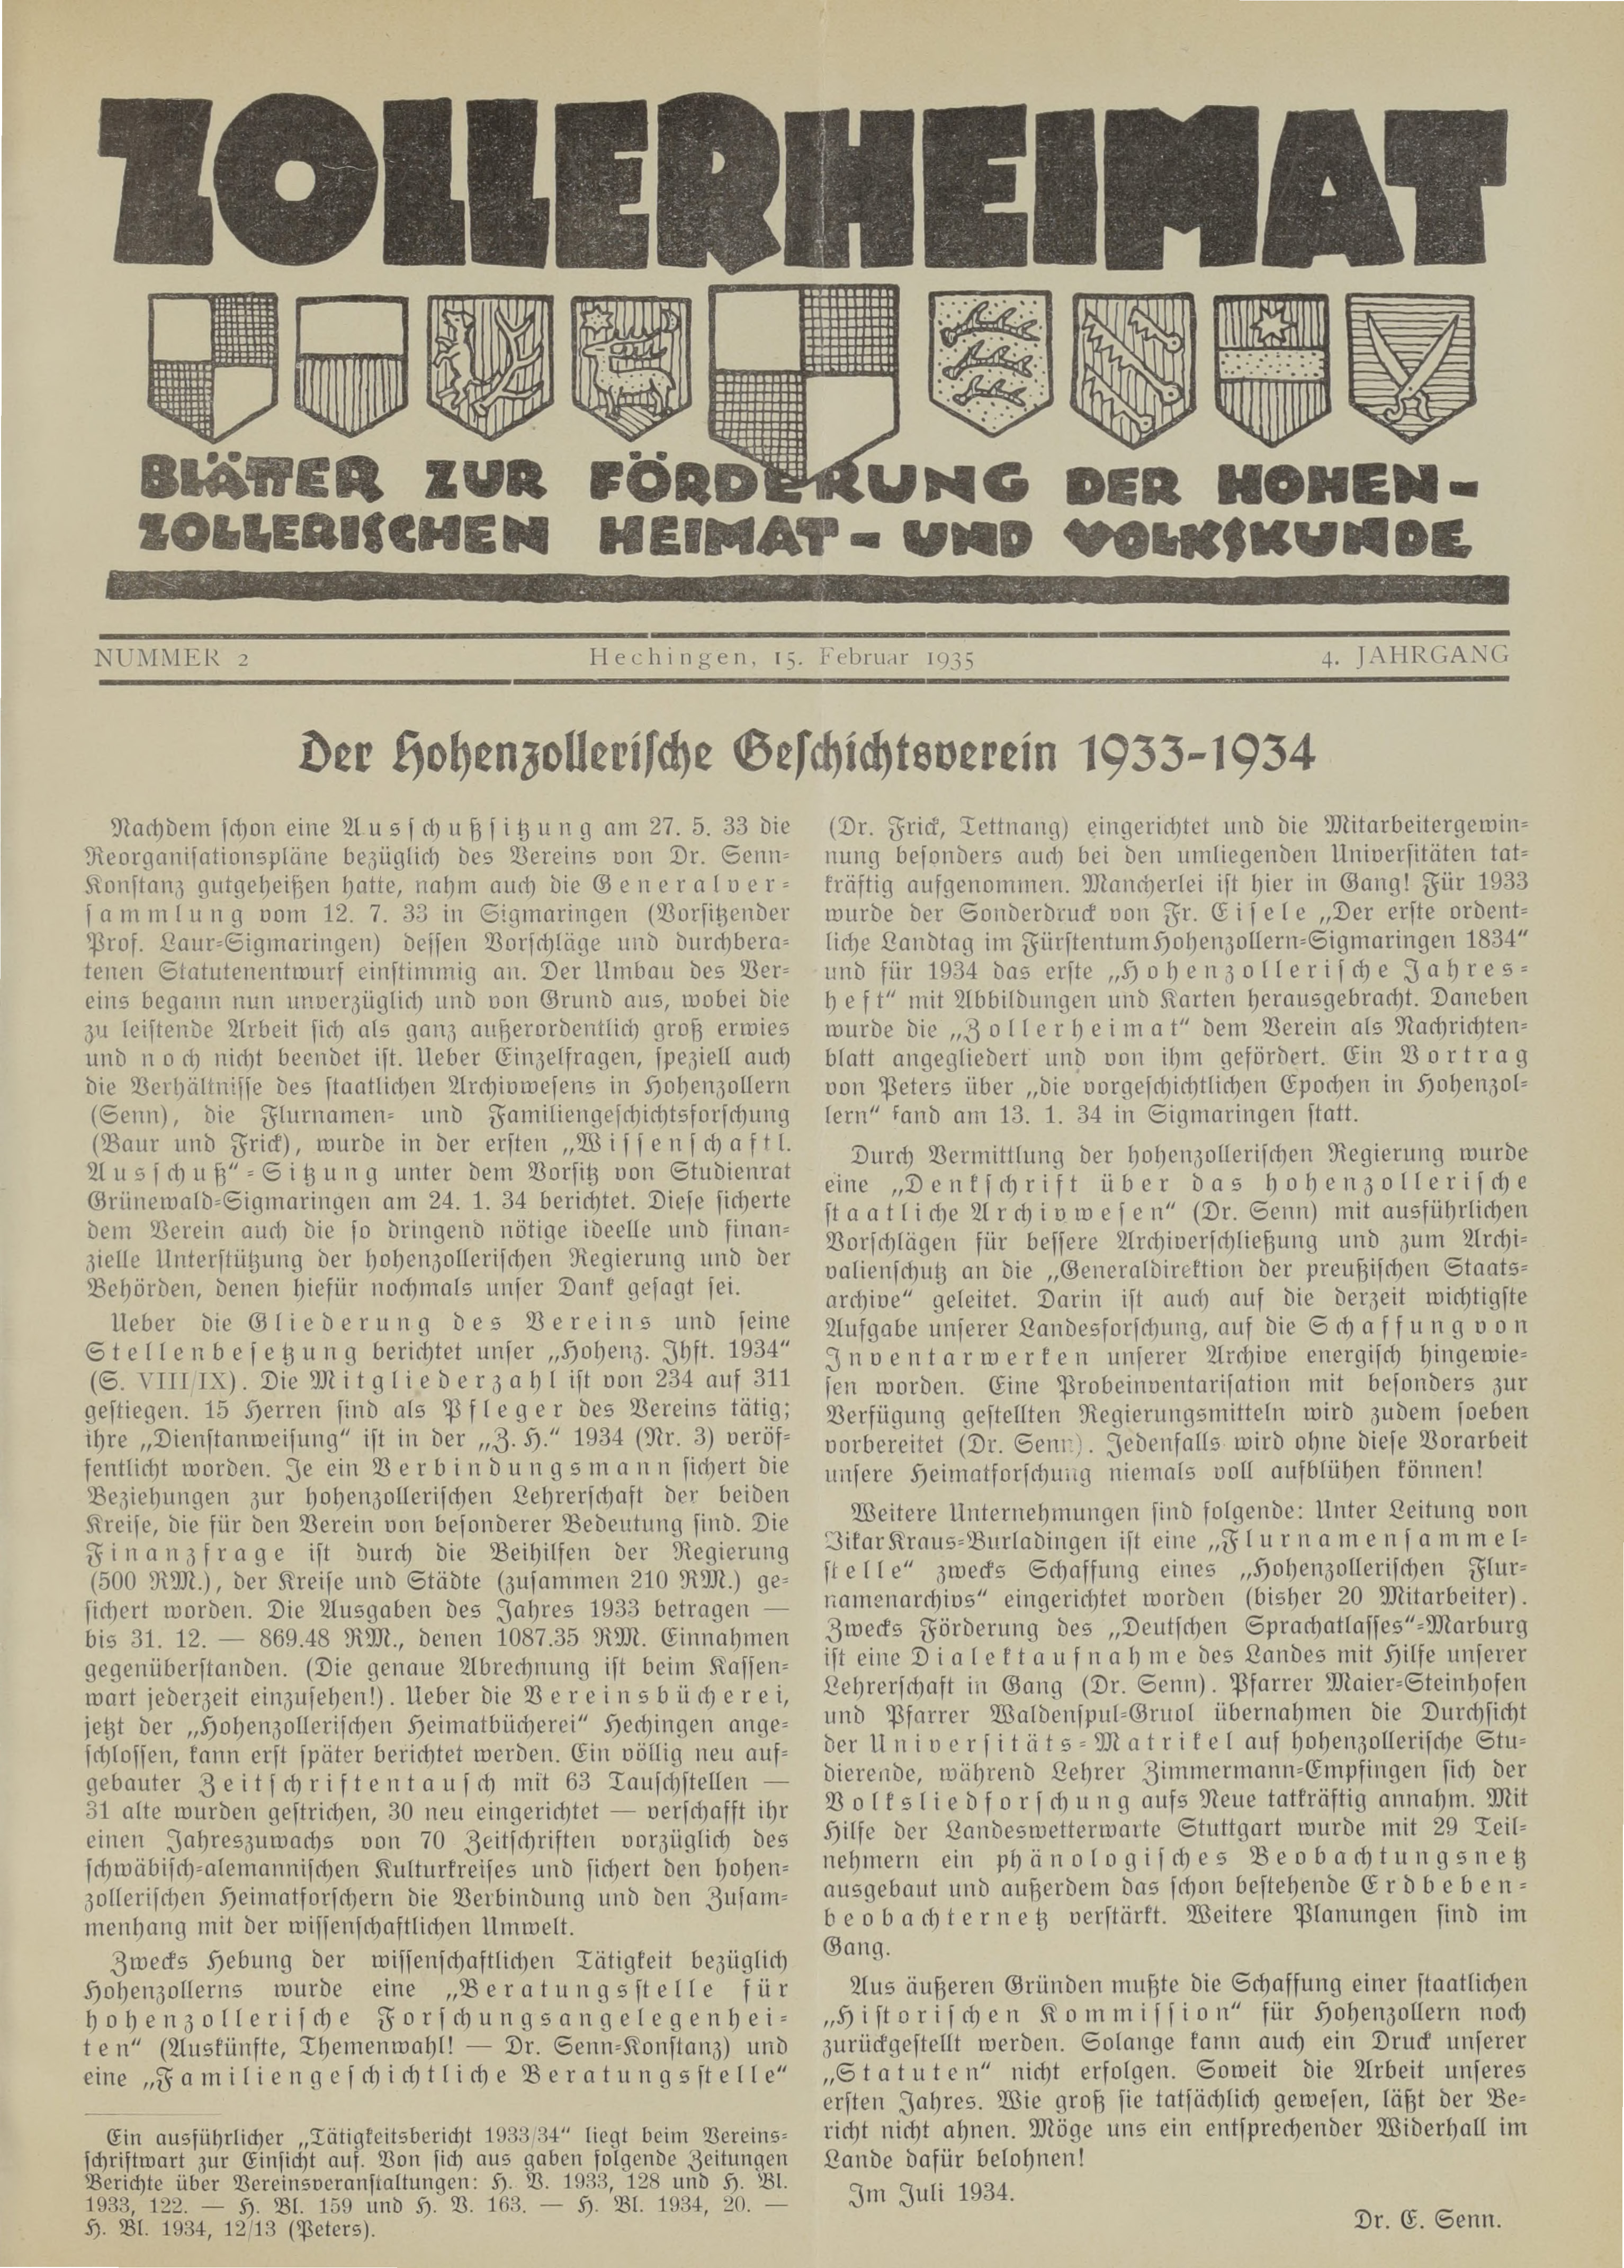                     Ansehen Bd. 4 Nr. 2 (1935): Zollerheimat
                